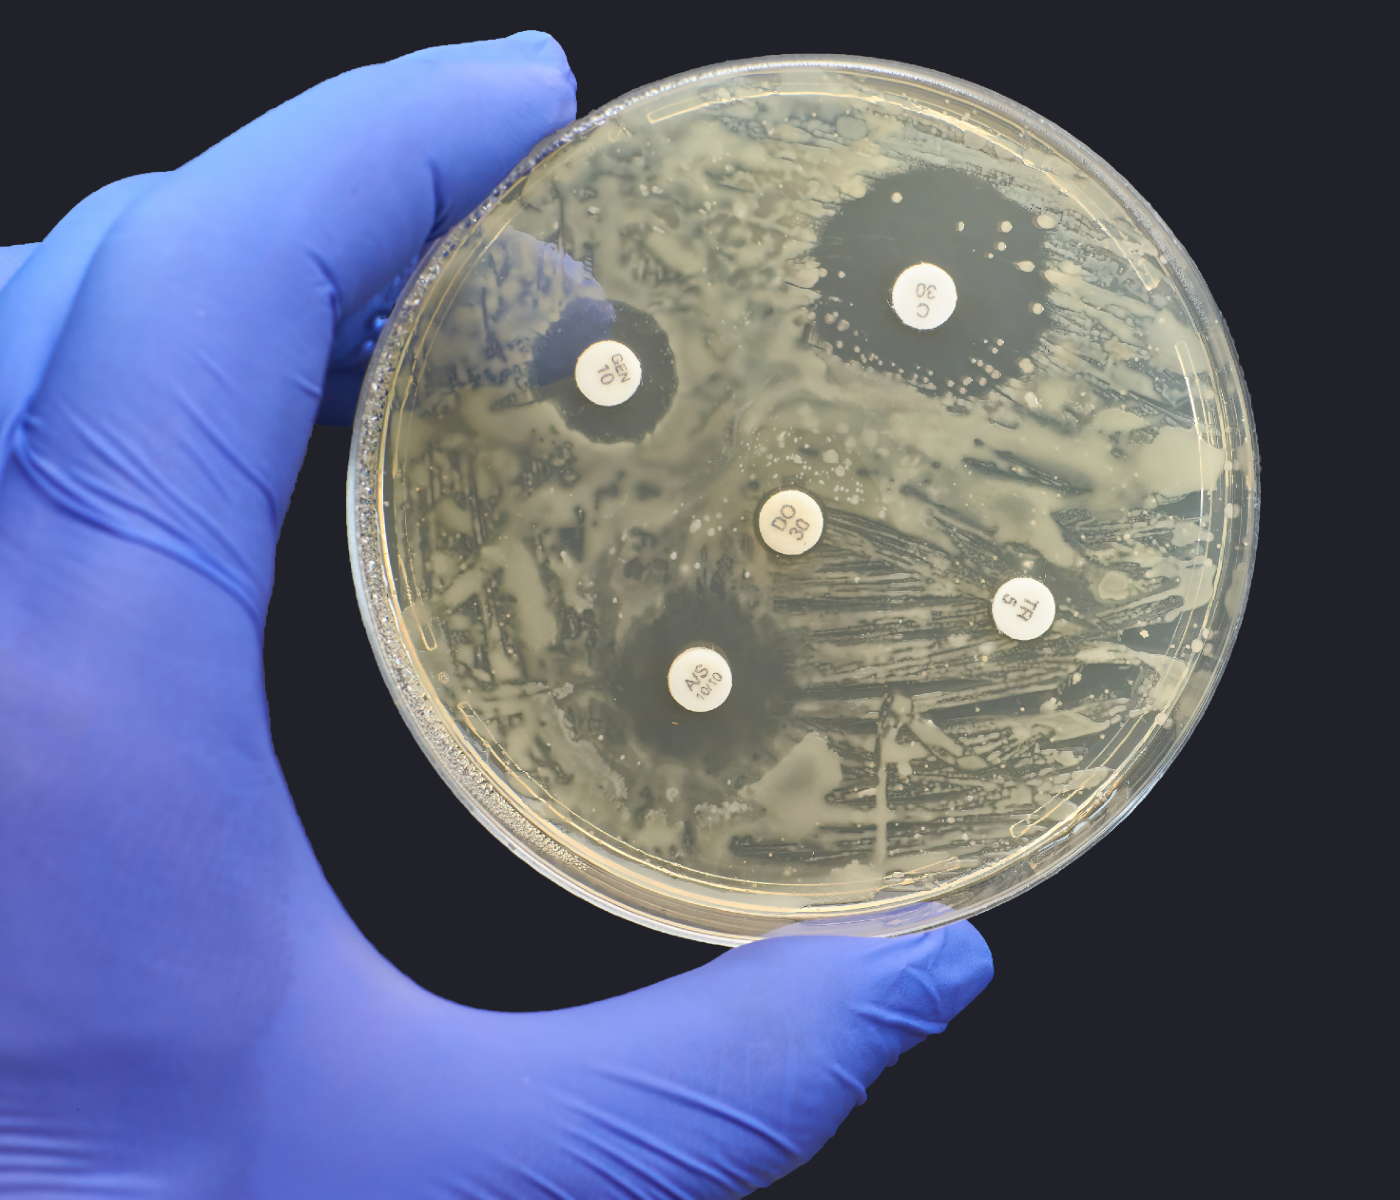 Utilización de antimicrobianos en producción animal ha disminuido mundialmente